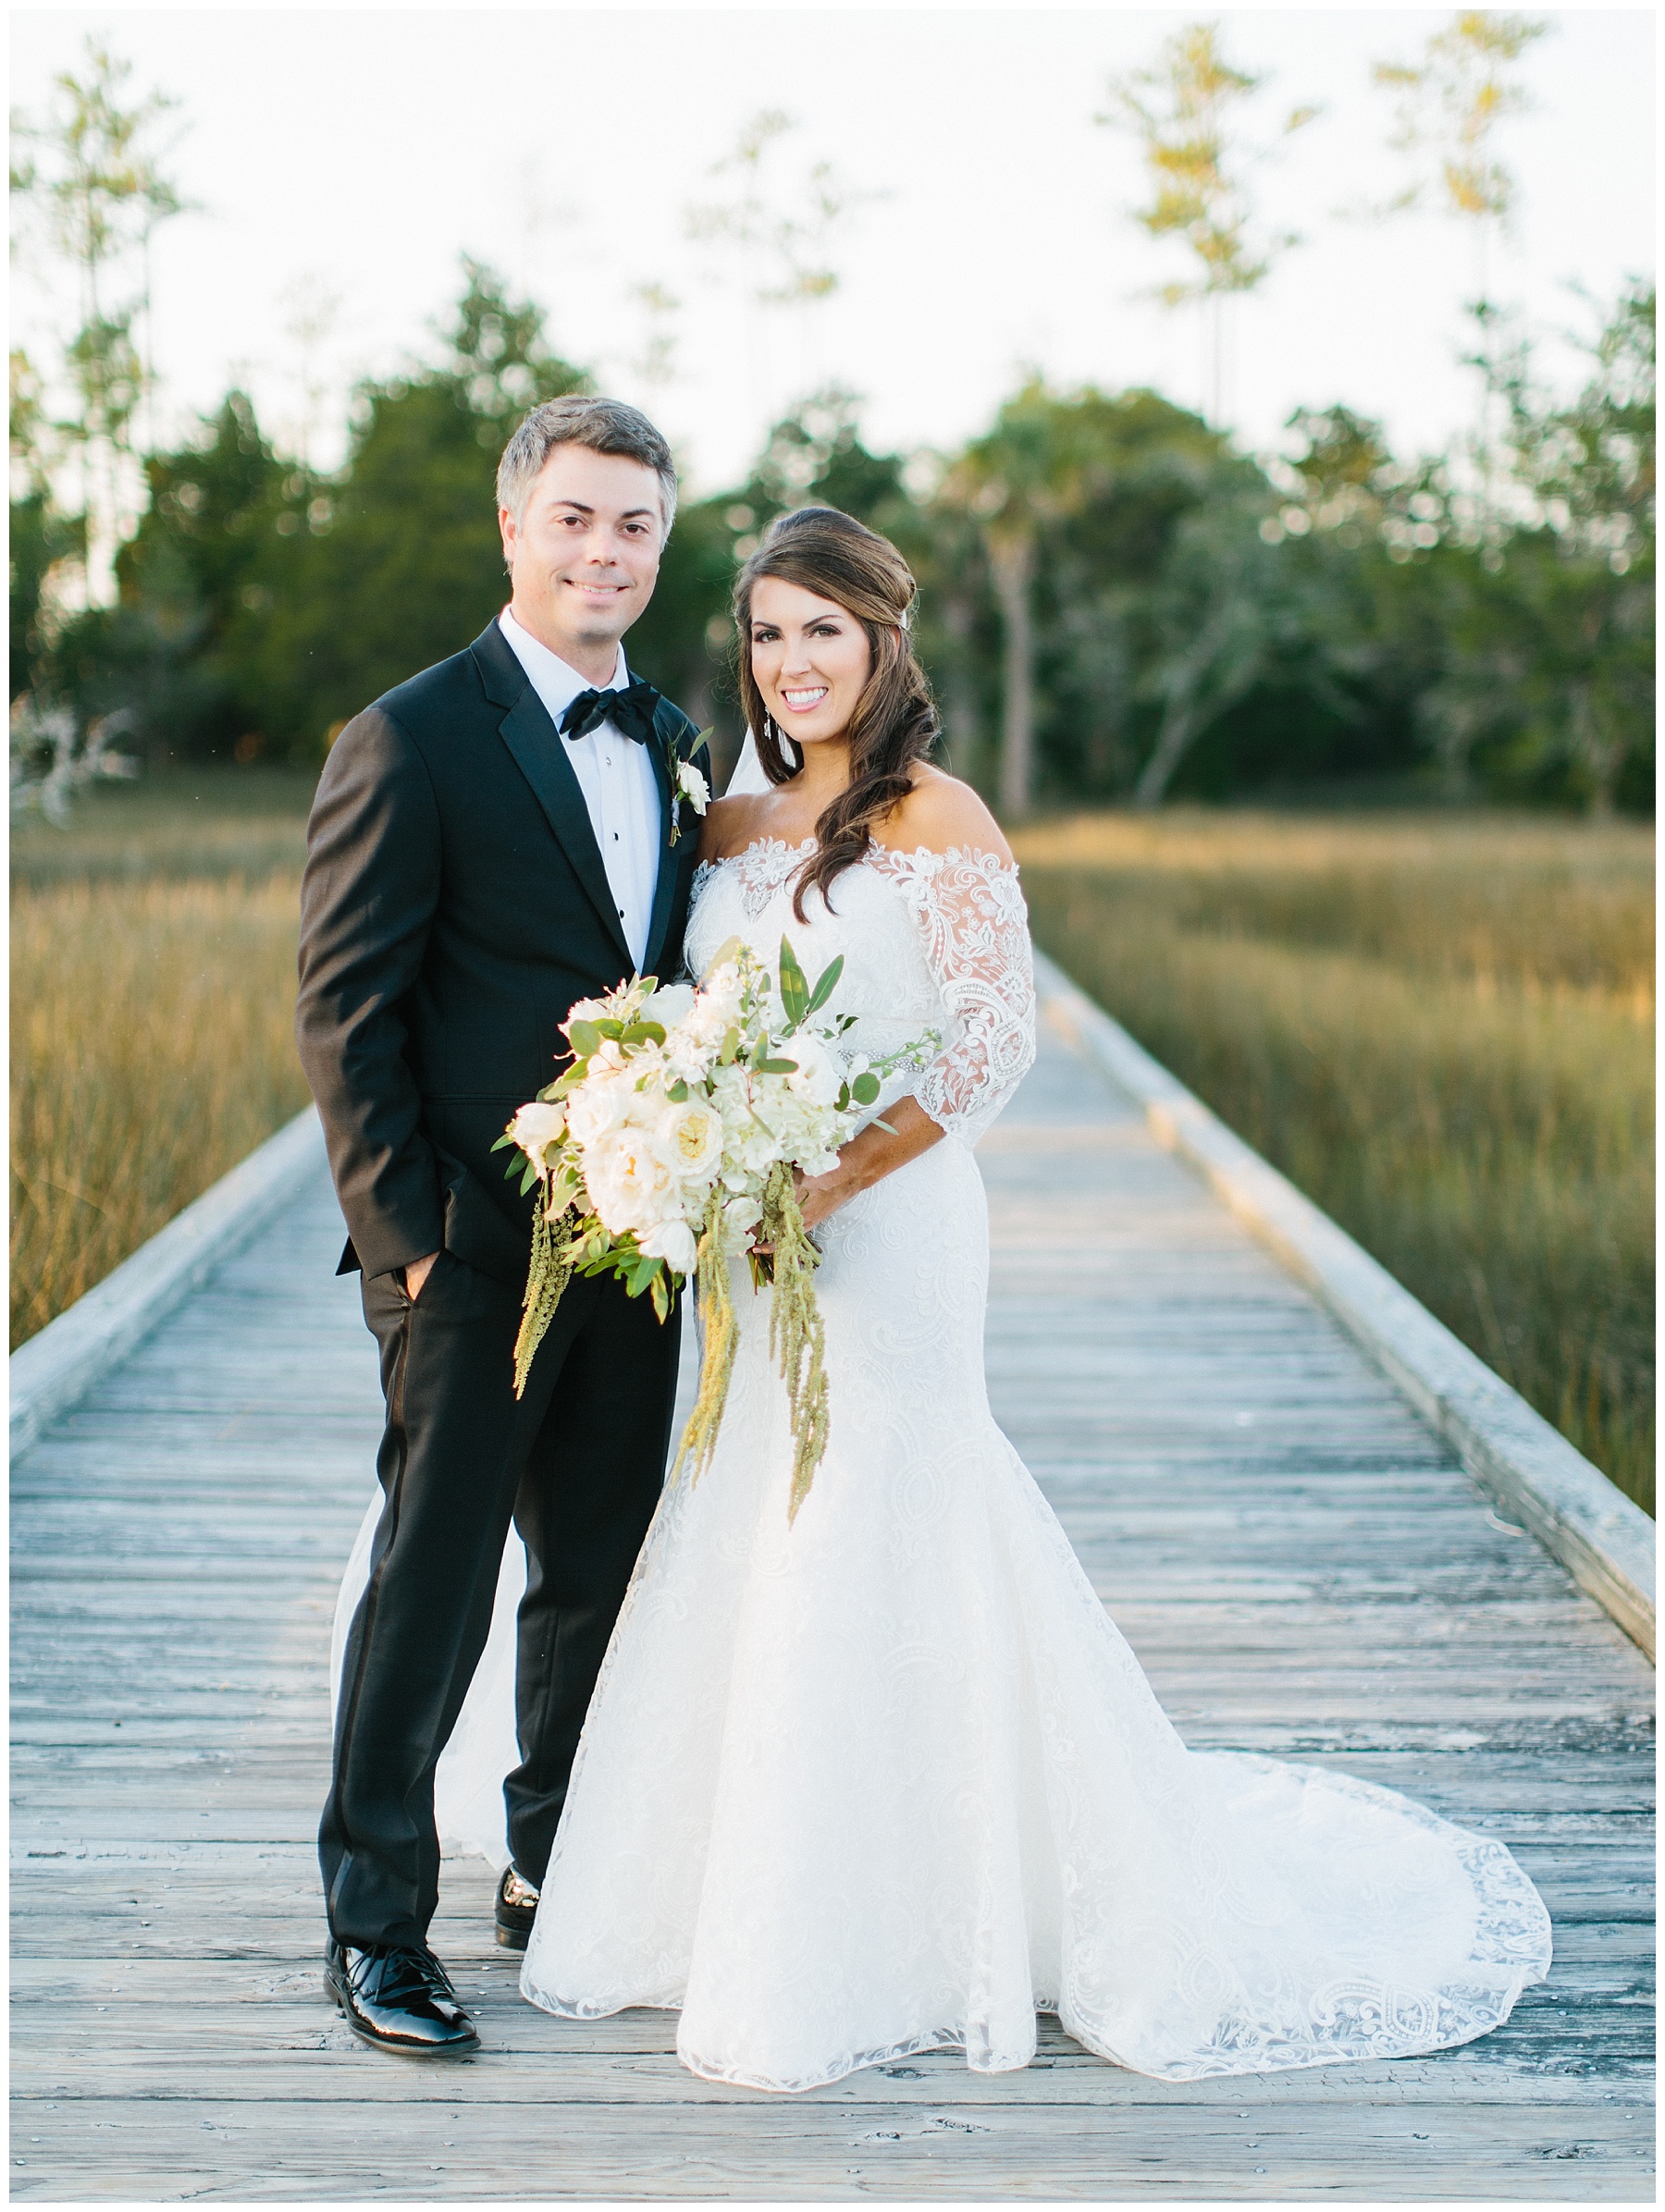 Rachel Red Photography,Charleston,Charleston Wedding Photographer,Destination Wedding Photographer,Photographer,